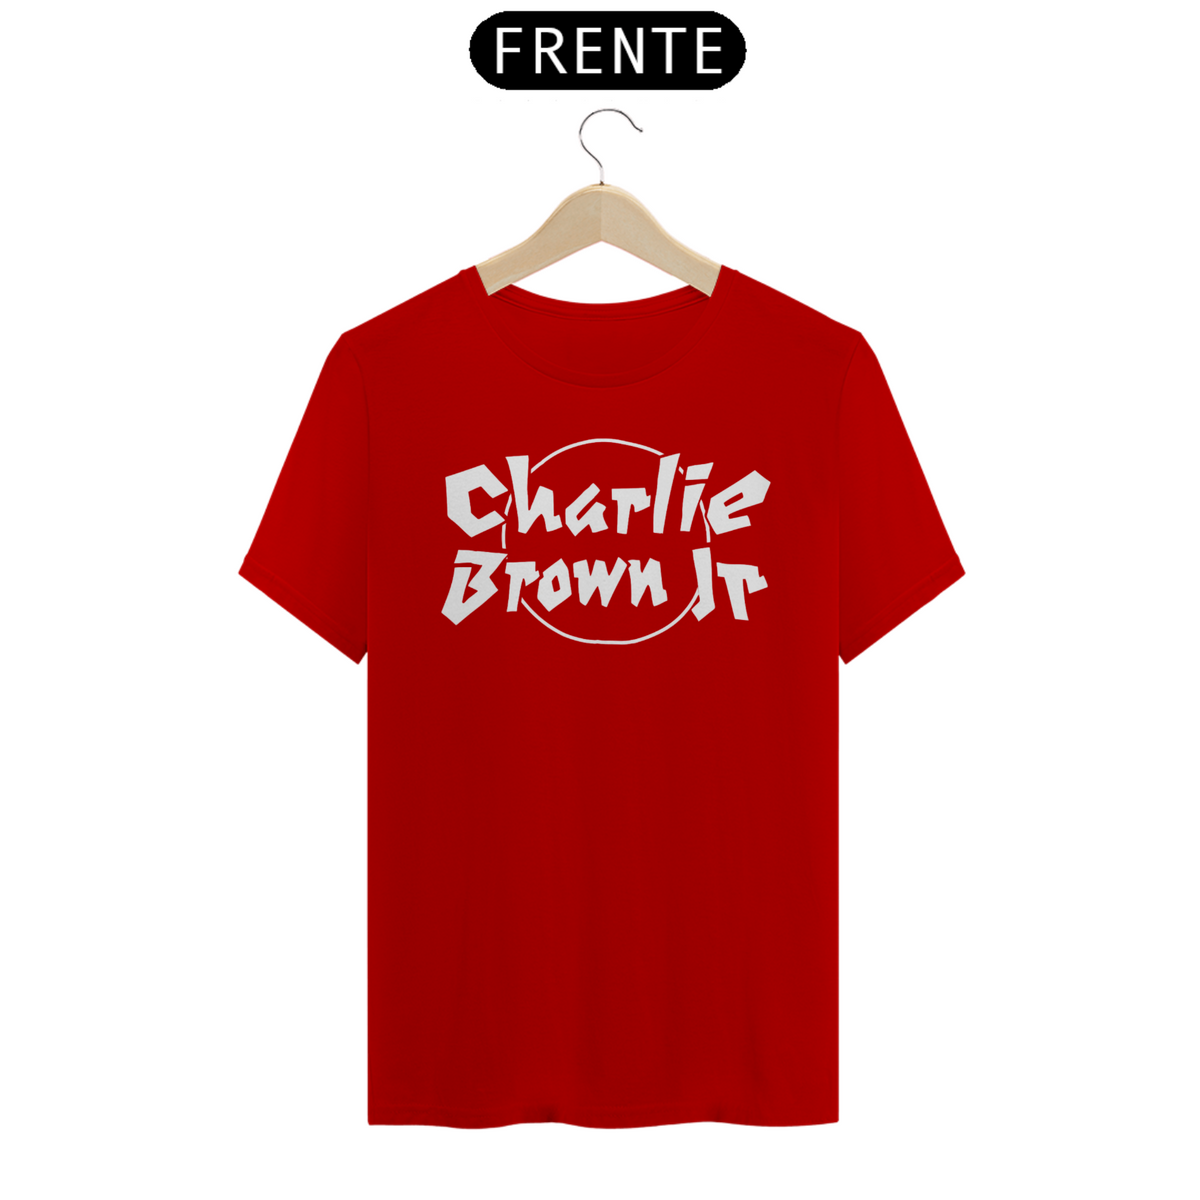 Nome do produto: Charlie Brown Jr.